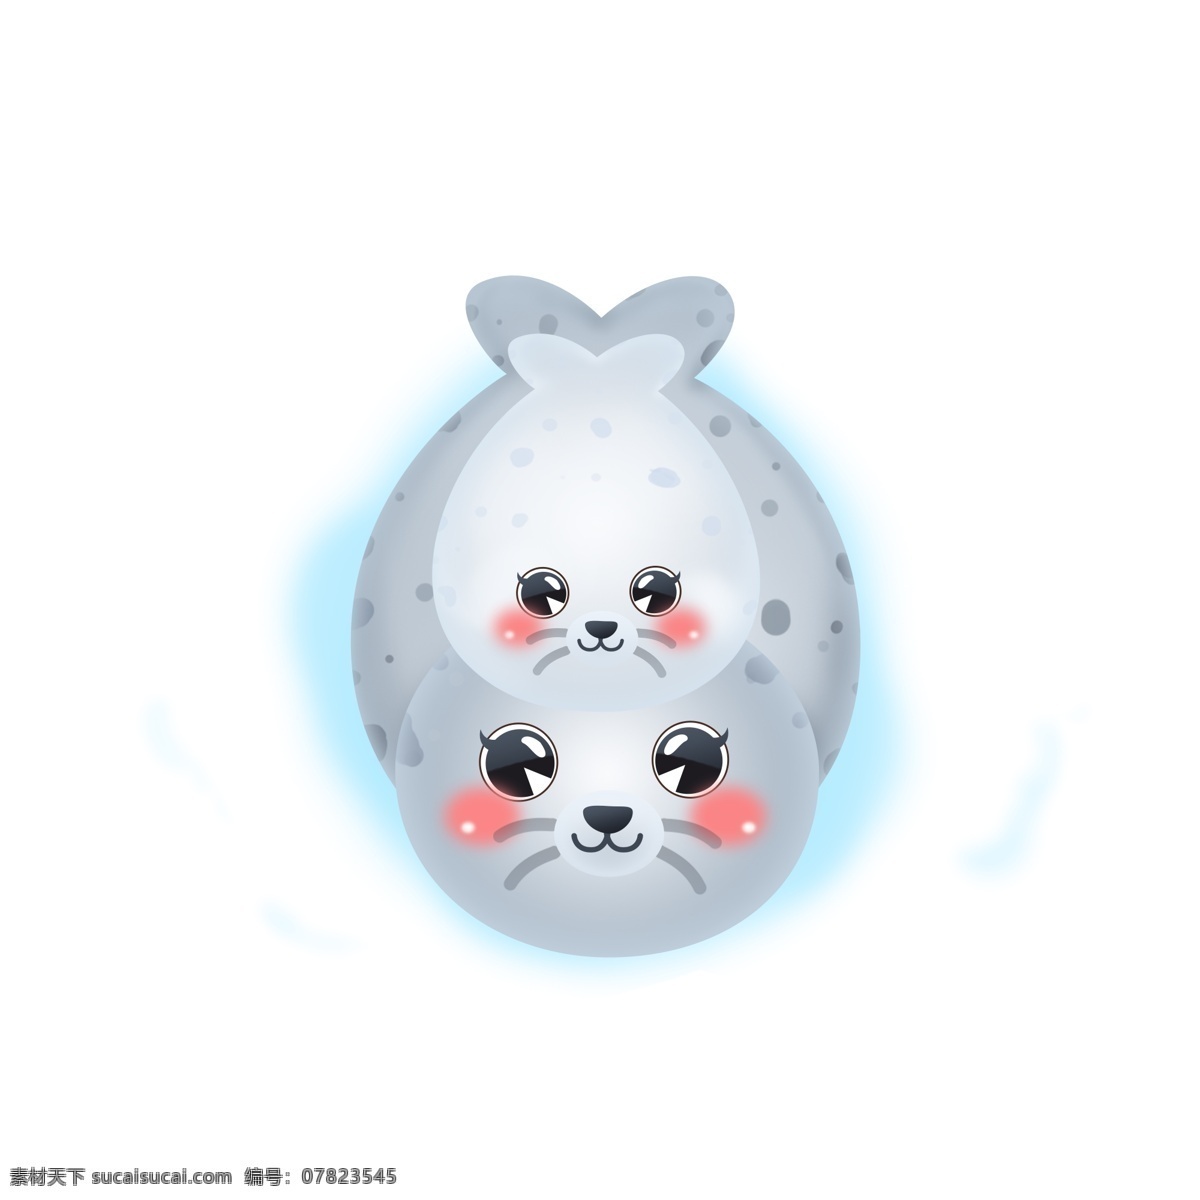 雪地 国际 海豹 节 卡通 可爱 母子 公益 动物 矢量 3月1日 爱护动物 南极